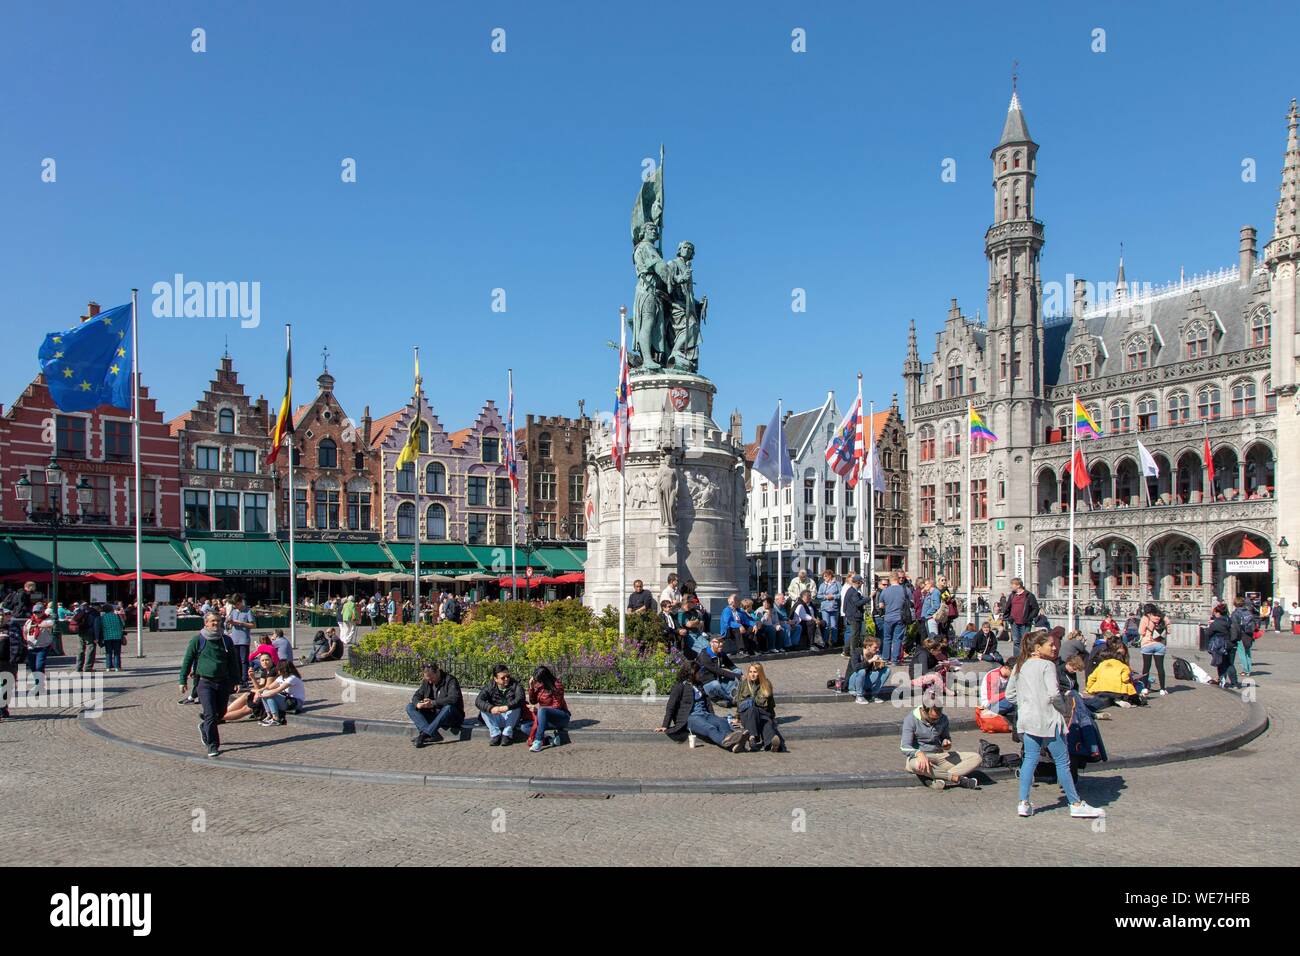 Belgio Fiandre Occidentali, Bruges, centro storico elencati come patrimonio mondiale dall' UNESCO, statua di Jan Breydel e Pieter De Coninck che ha guidato il Bruges mattine di 1302 massacrano i sostenitori del re di Francia Foto Stock